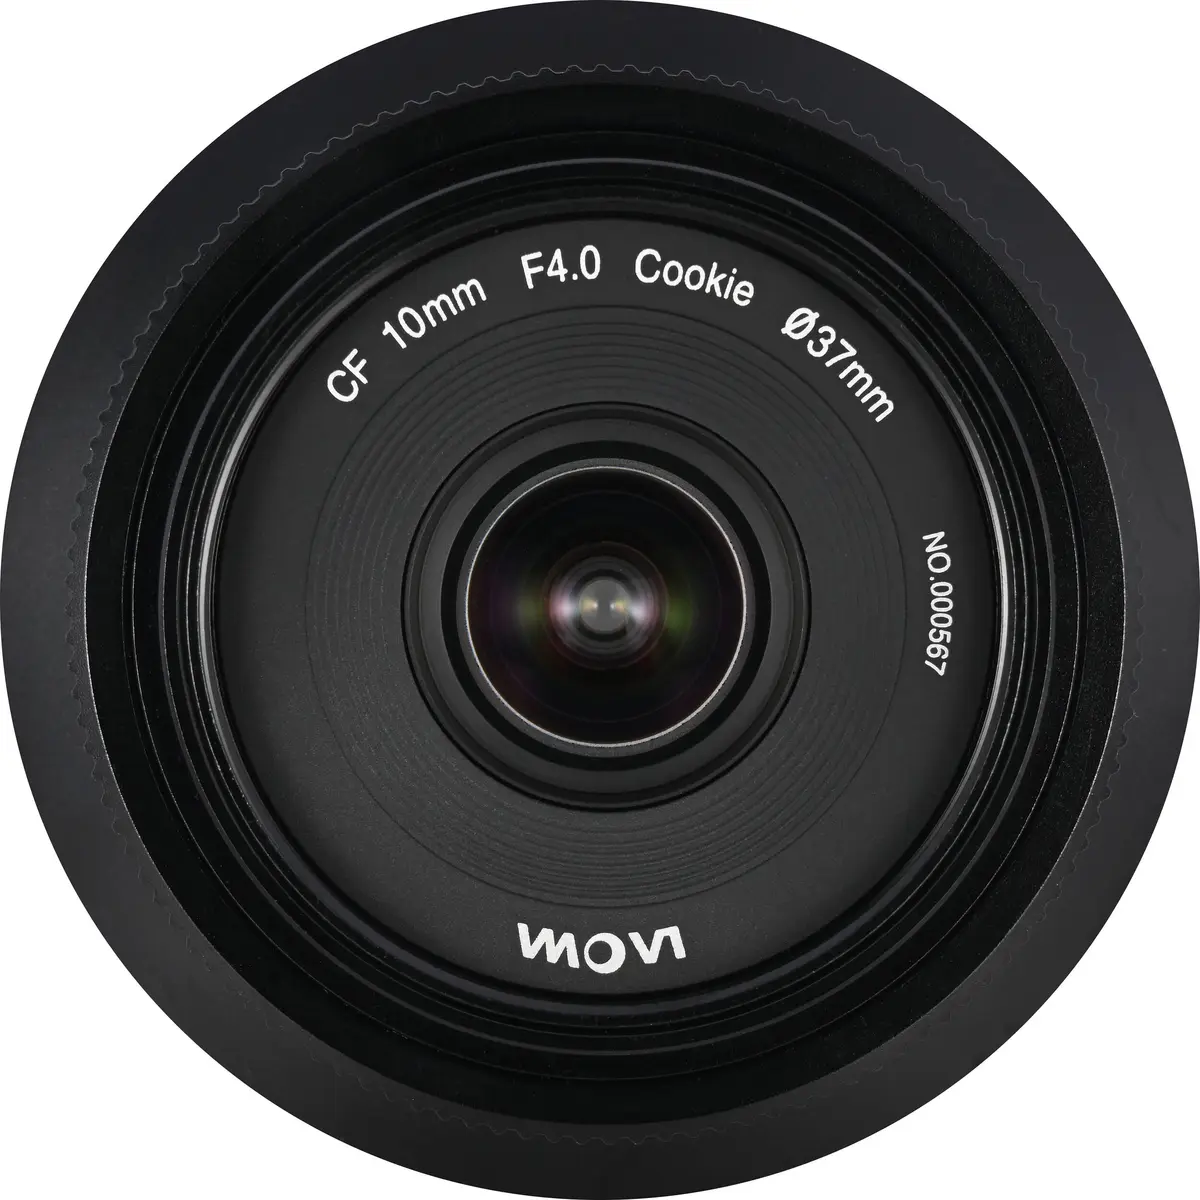 2. Laowa CF 10mm F4 Cookie (Nikon Z)